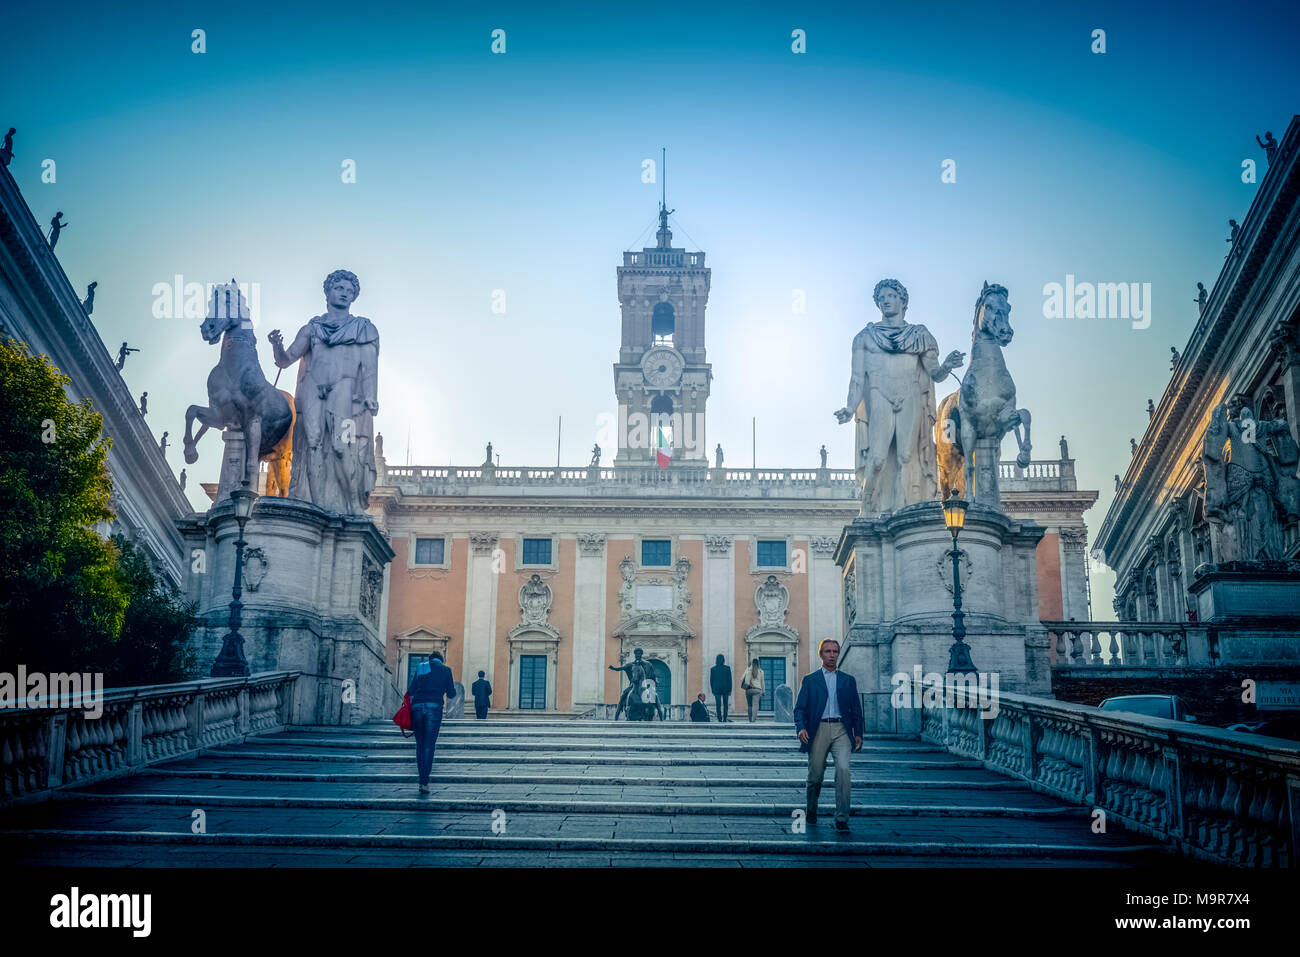 Europa, Italien, Rom,Piazza del Campidoglio, Kapitolsplatz Foto Stock